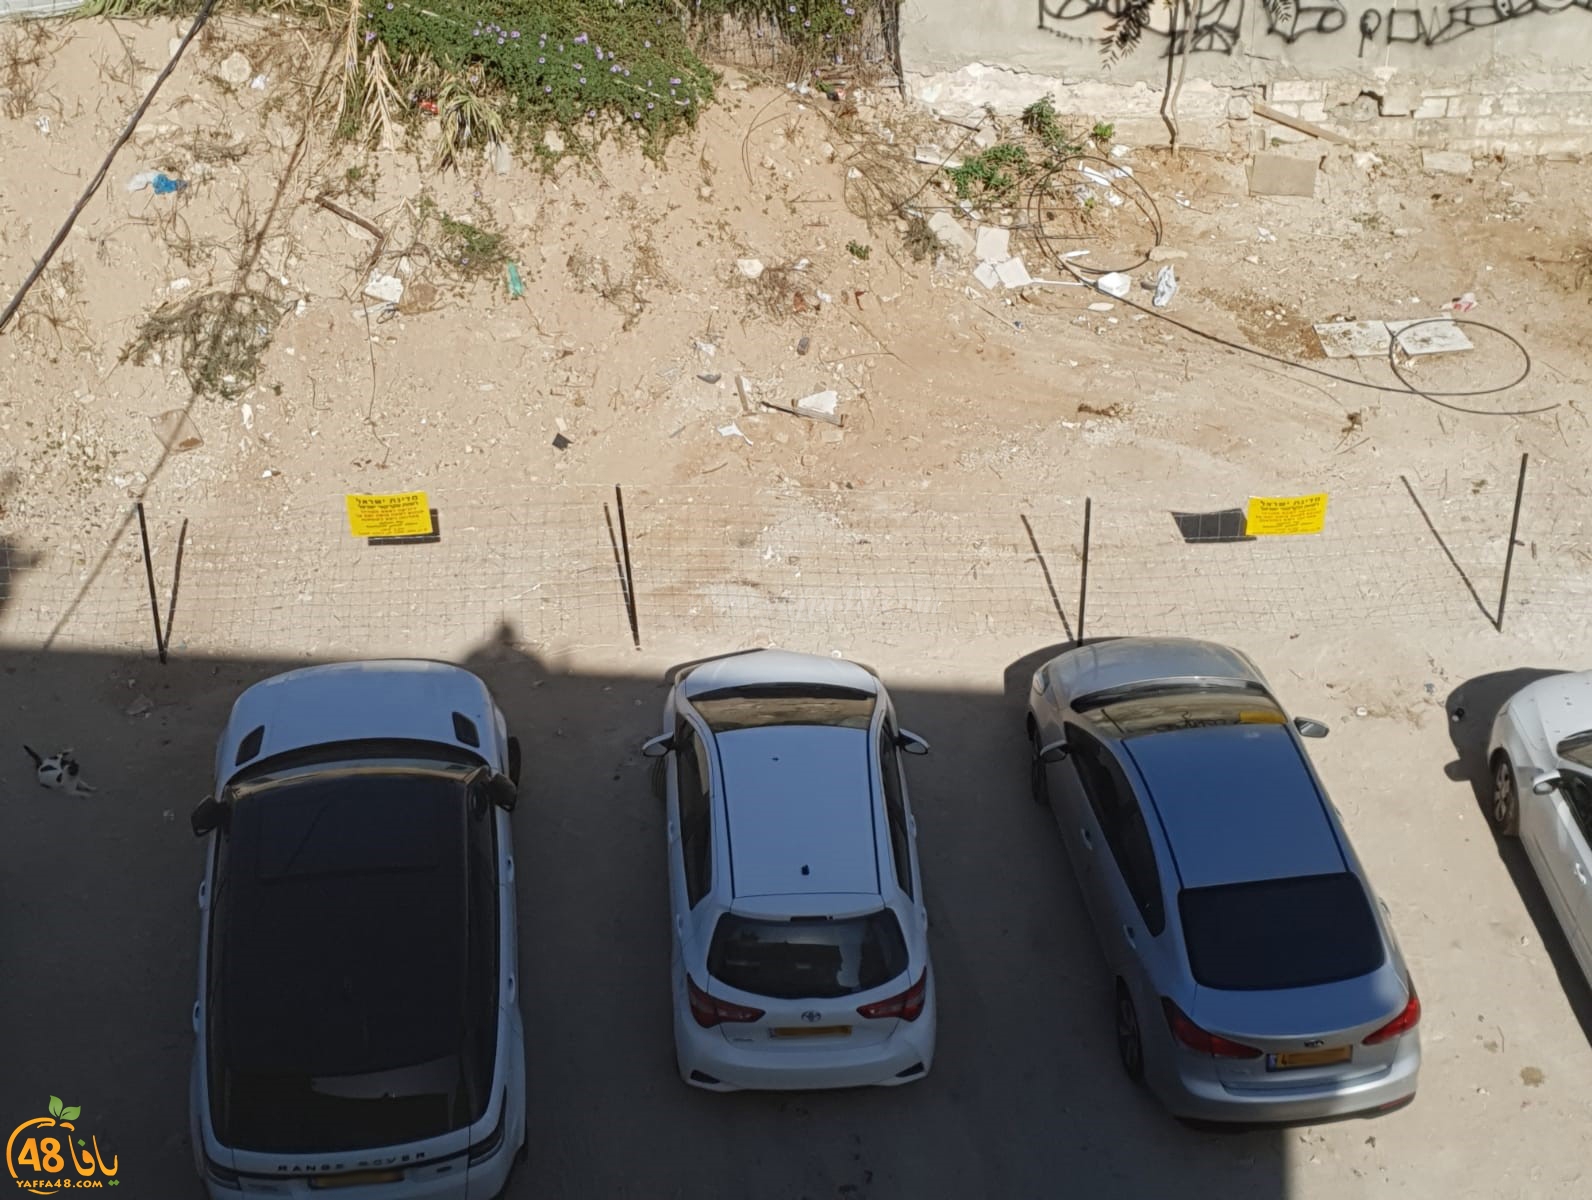   دائرة أراضي اسرائيل تُغلق قطعة أرض بيافا استخدمها السكان لركن سياراتهم 